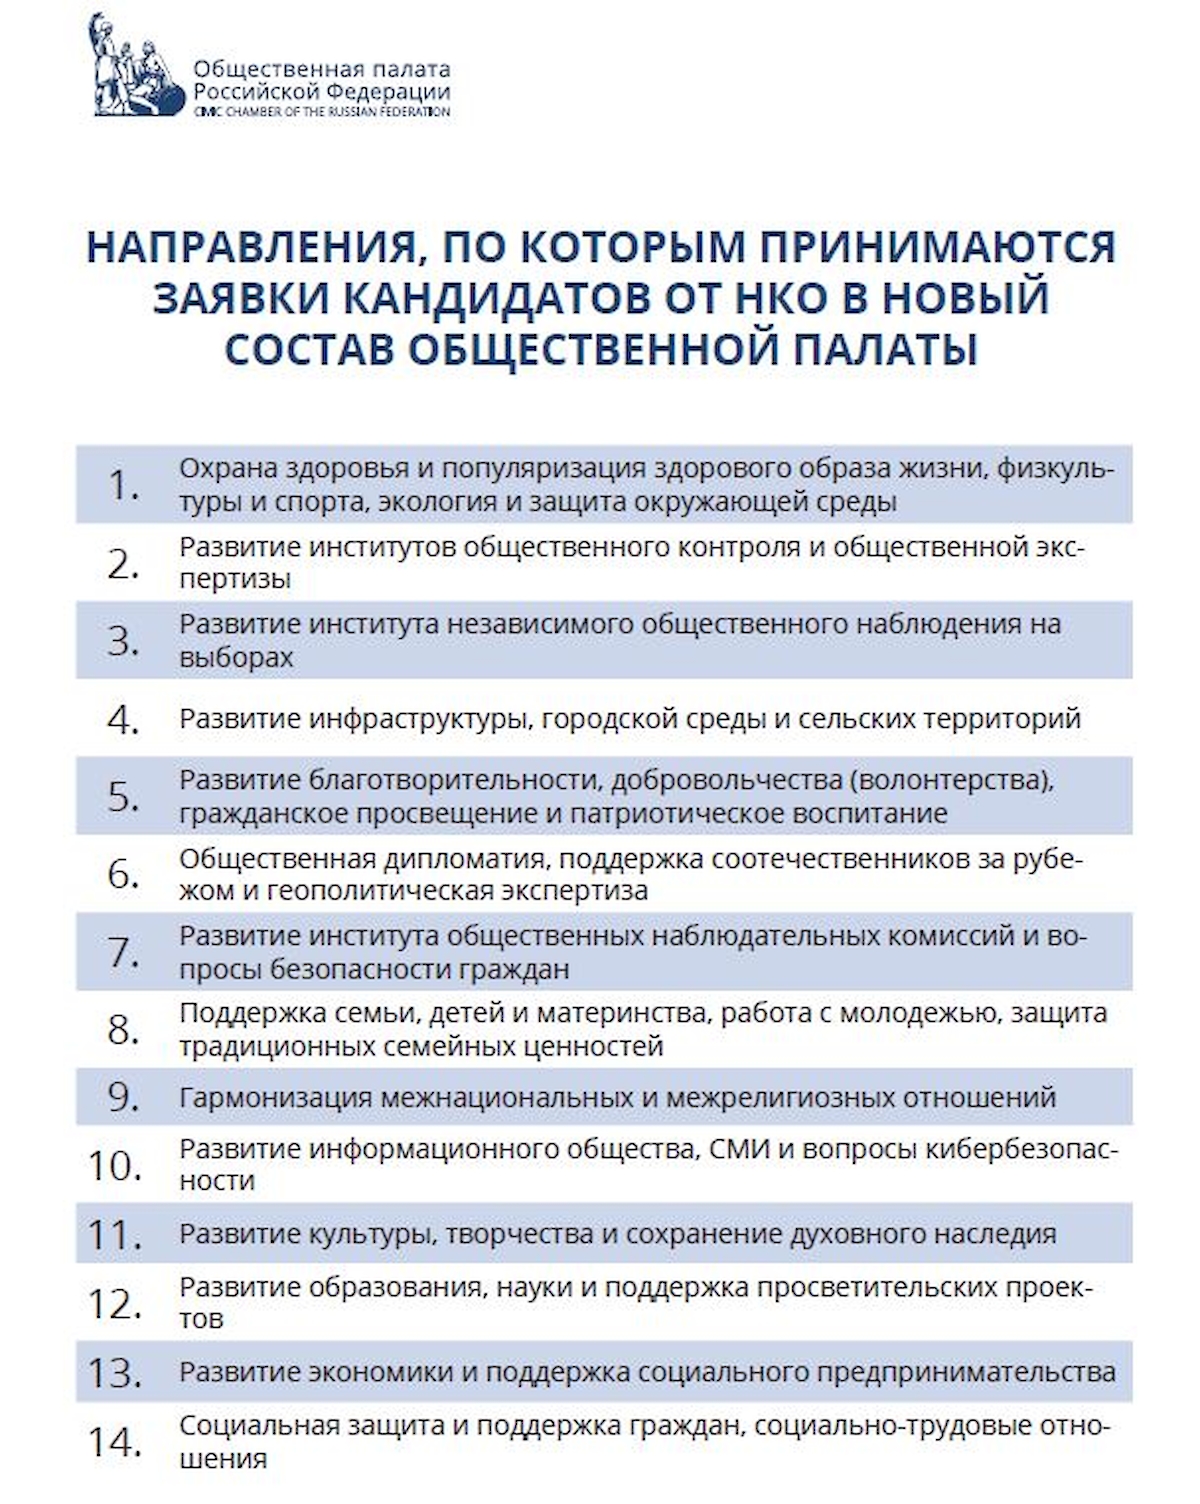 Общественная палата РФ объявила о начале конкурса по отбору 43 членов нового состава — представителей НКО